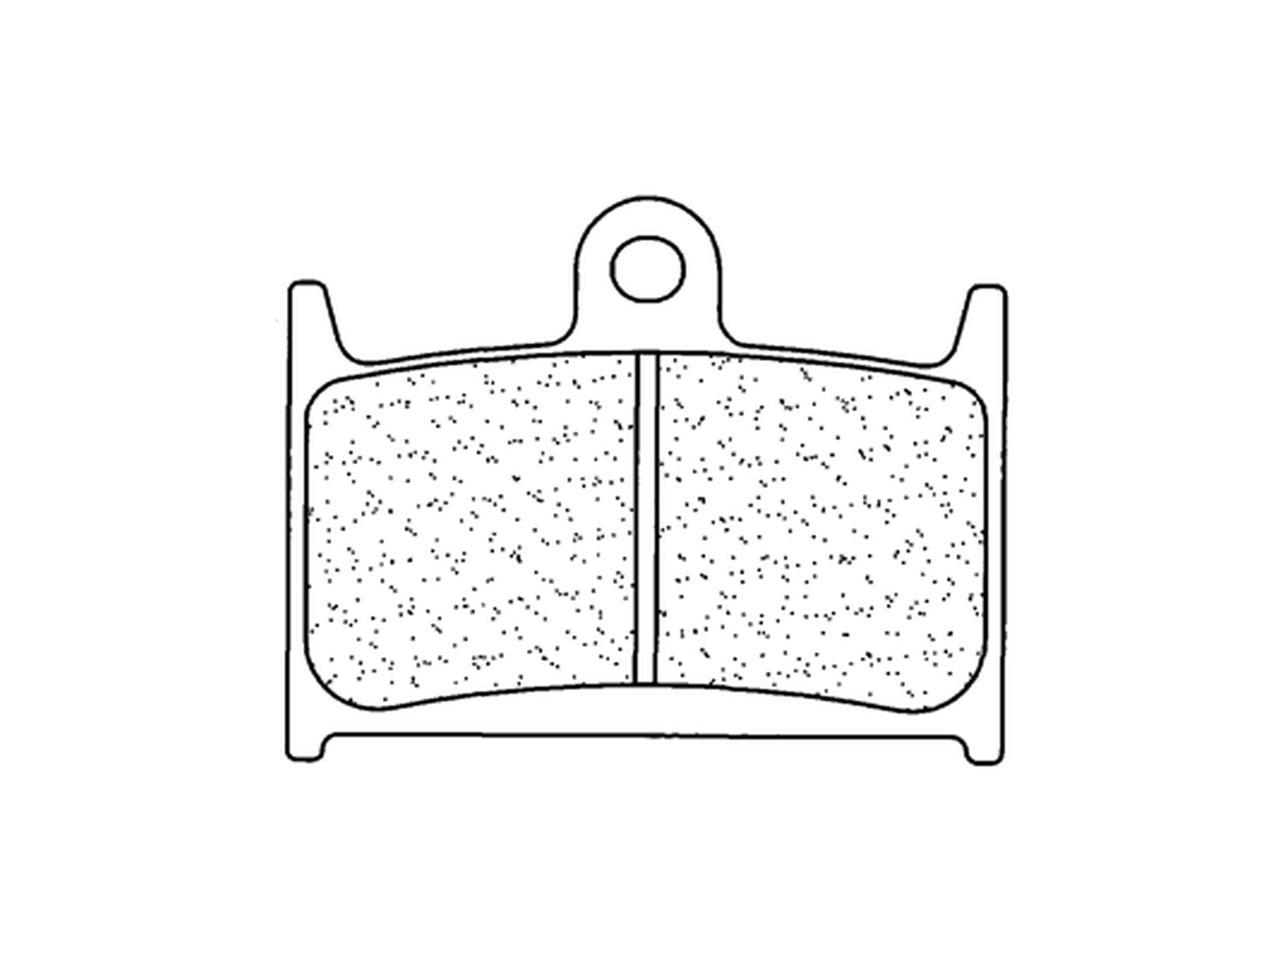 Plaquettes de frein en métal fritté CL Brakes : 2246XBK5 | SUZUKI, TRIUMPH